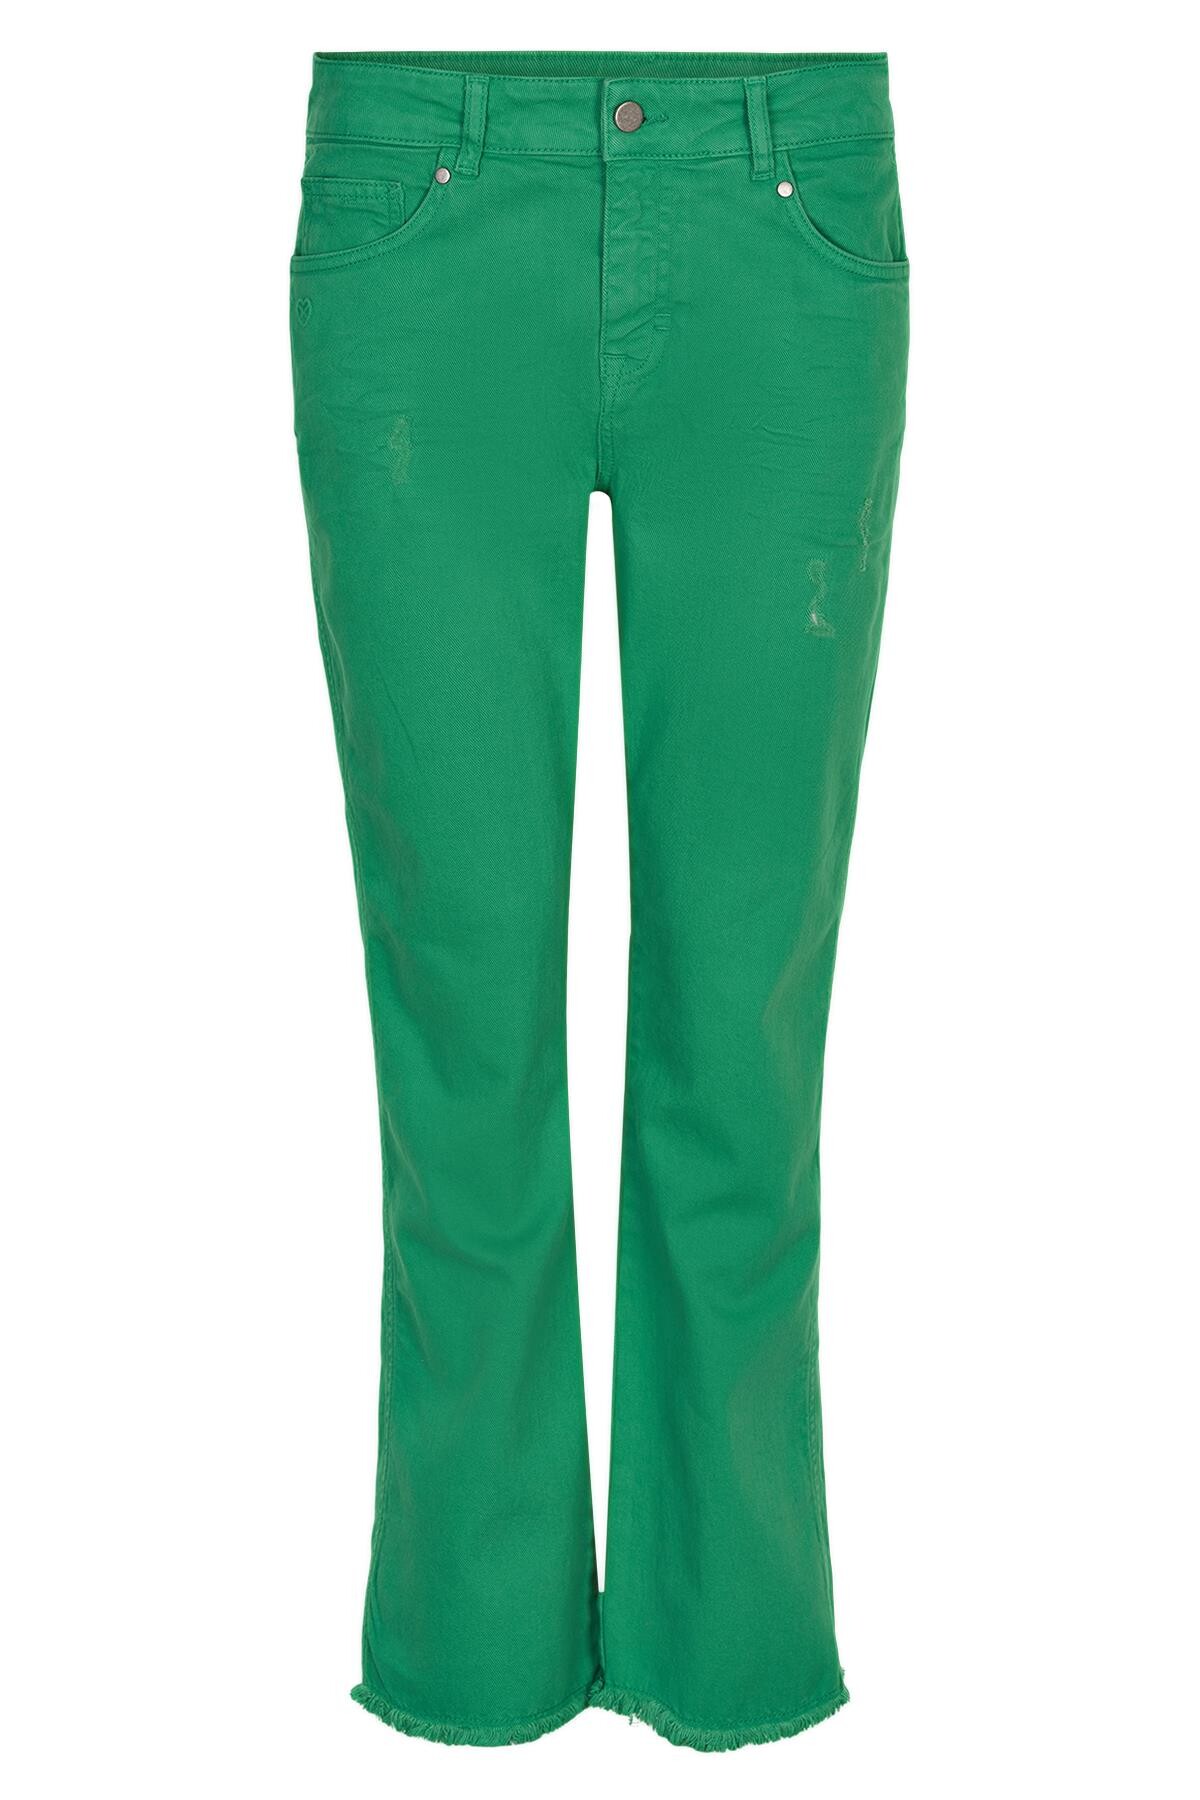 Se IN FRONT Ellie Jeans, Farve: Grass, Størrelse: 42, Dame hos Infront Women